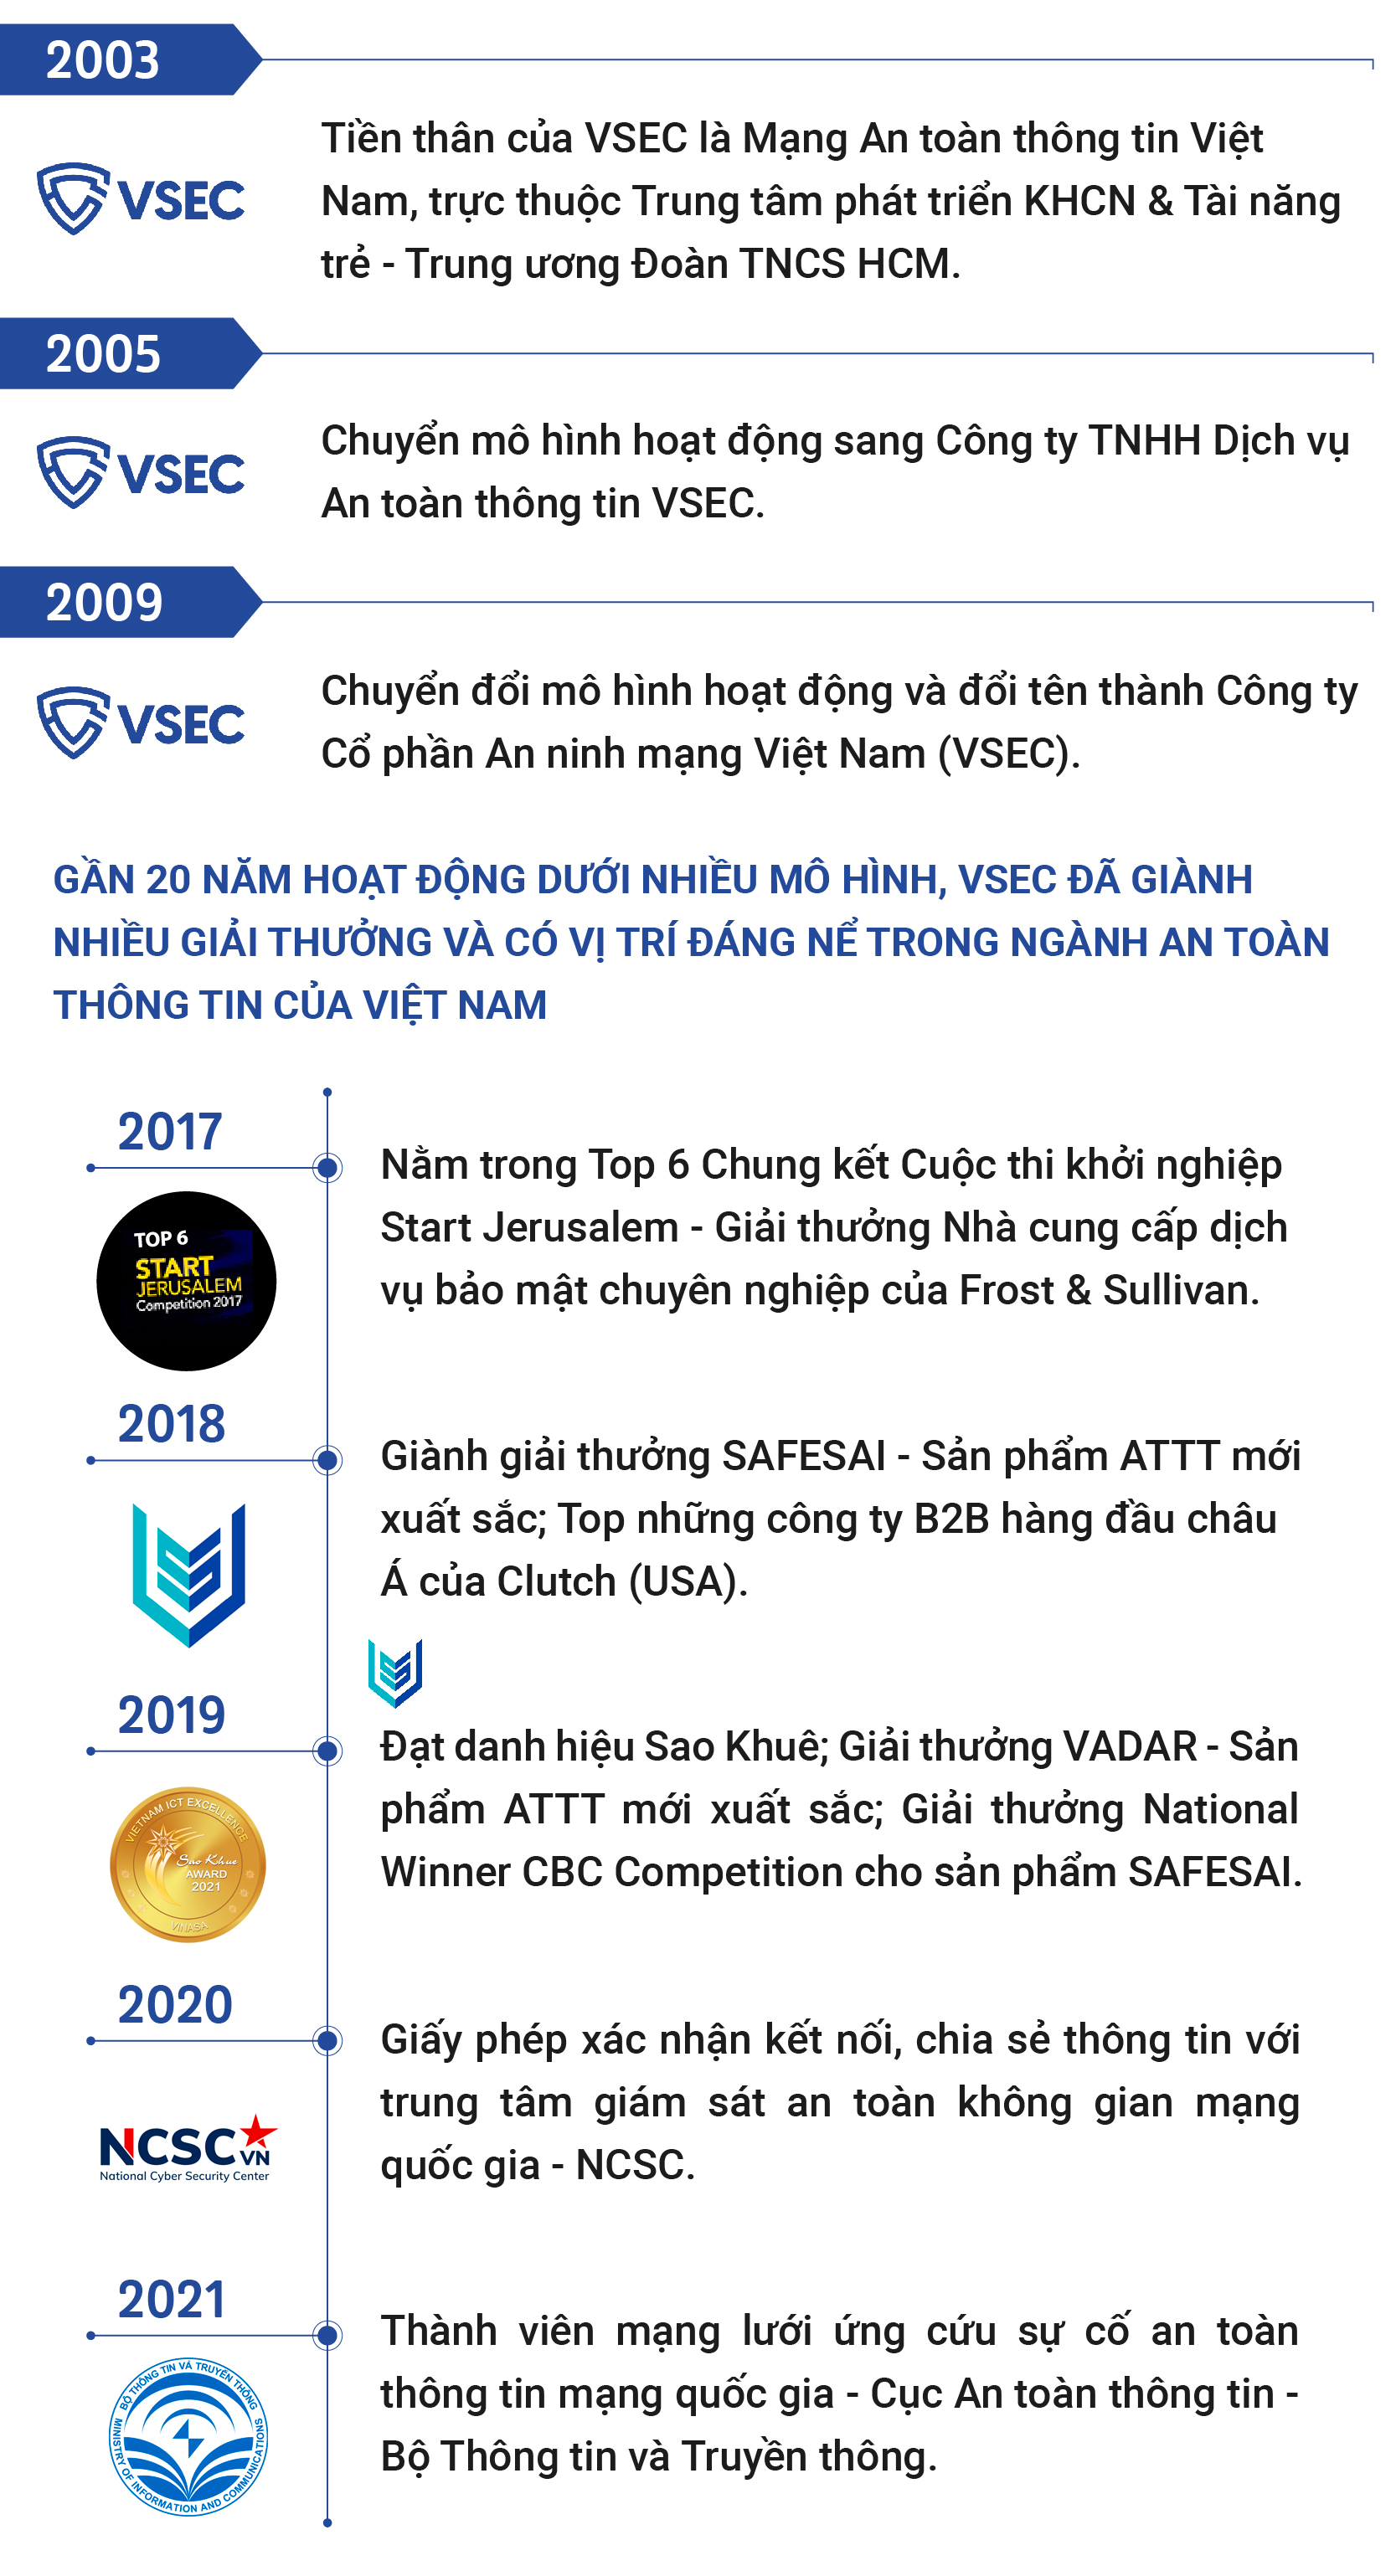 CEO VSEC Trương Đức Lượng: “Với ngành công nghệ, đúng thời điểm quyết định tất cả” - Ảnh 10.